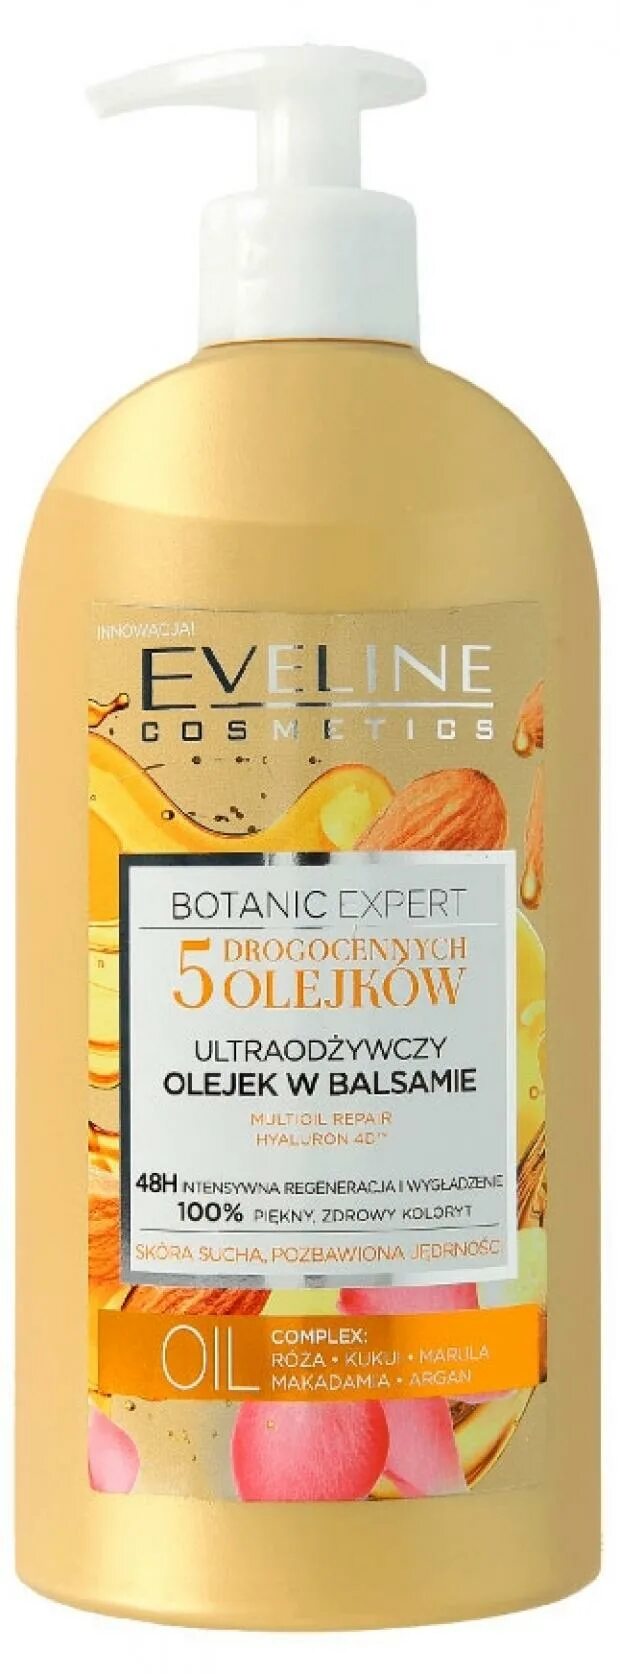 Бальзам 5 масел. Крем для тела Eveline Botanic. Эвелин лосьон для тела 5 масел. Масло для тела Eveline Cosmetics. Eveline Cosmetics лосьон.